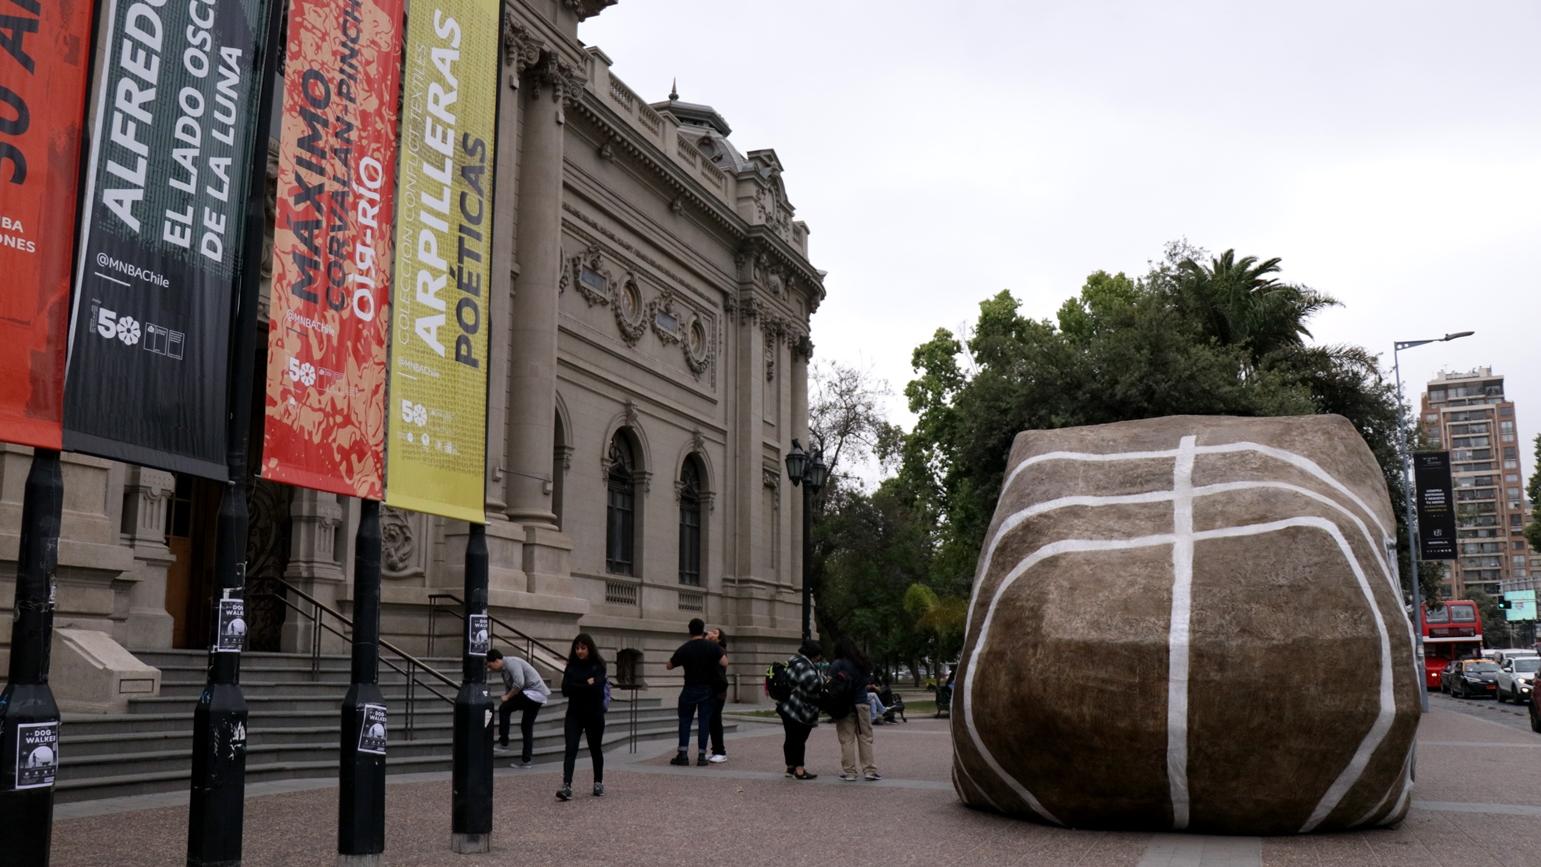 Fotografía del frontis del MNBA con intervención artística en el frontis, que simula una piedra gigante